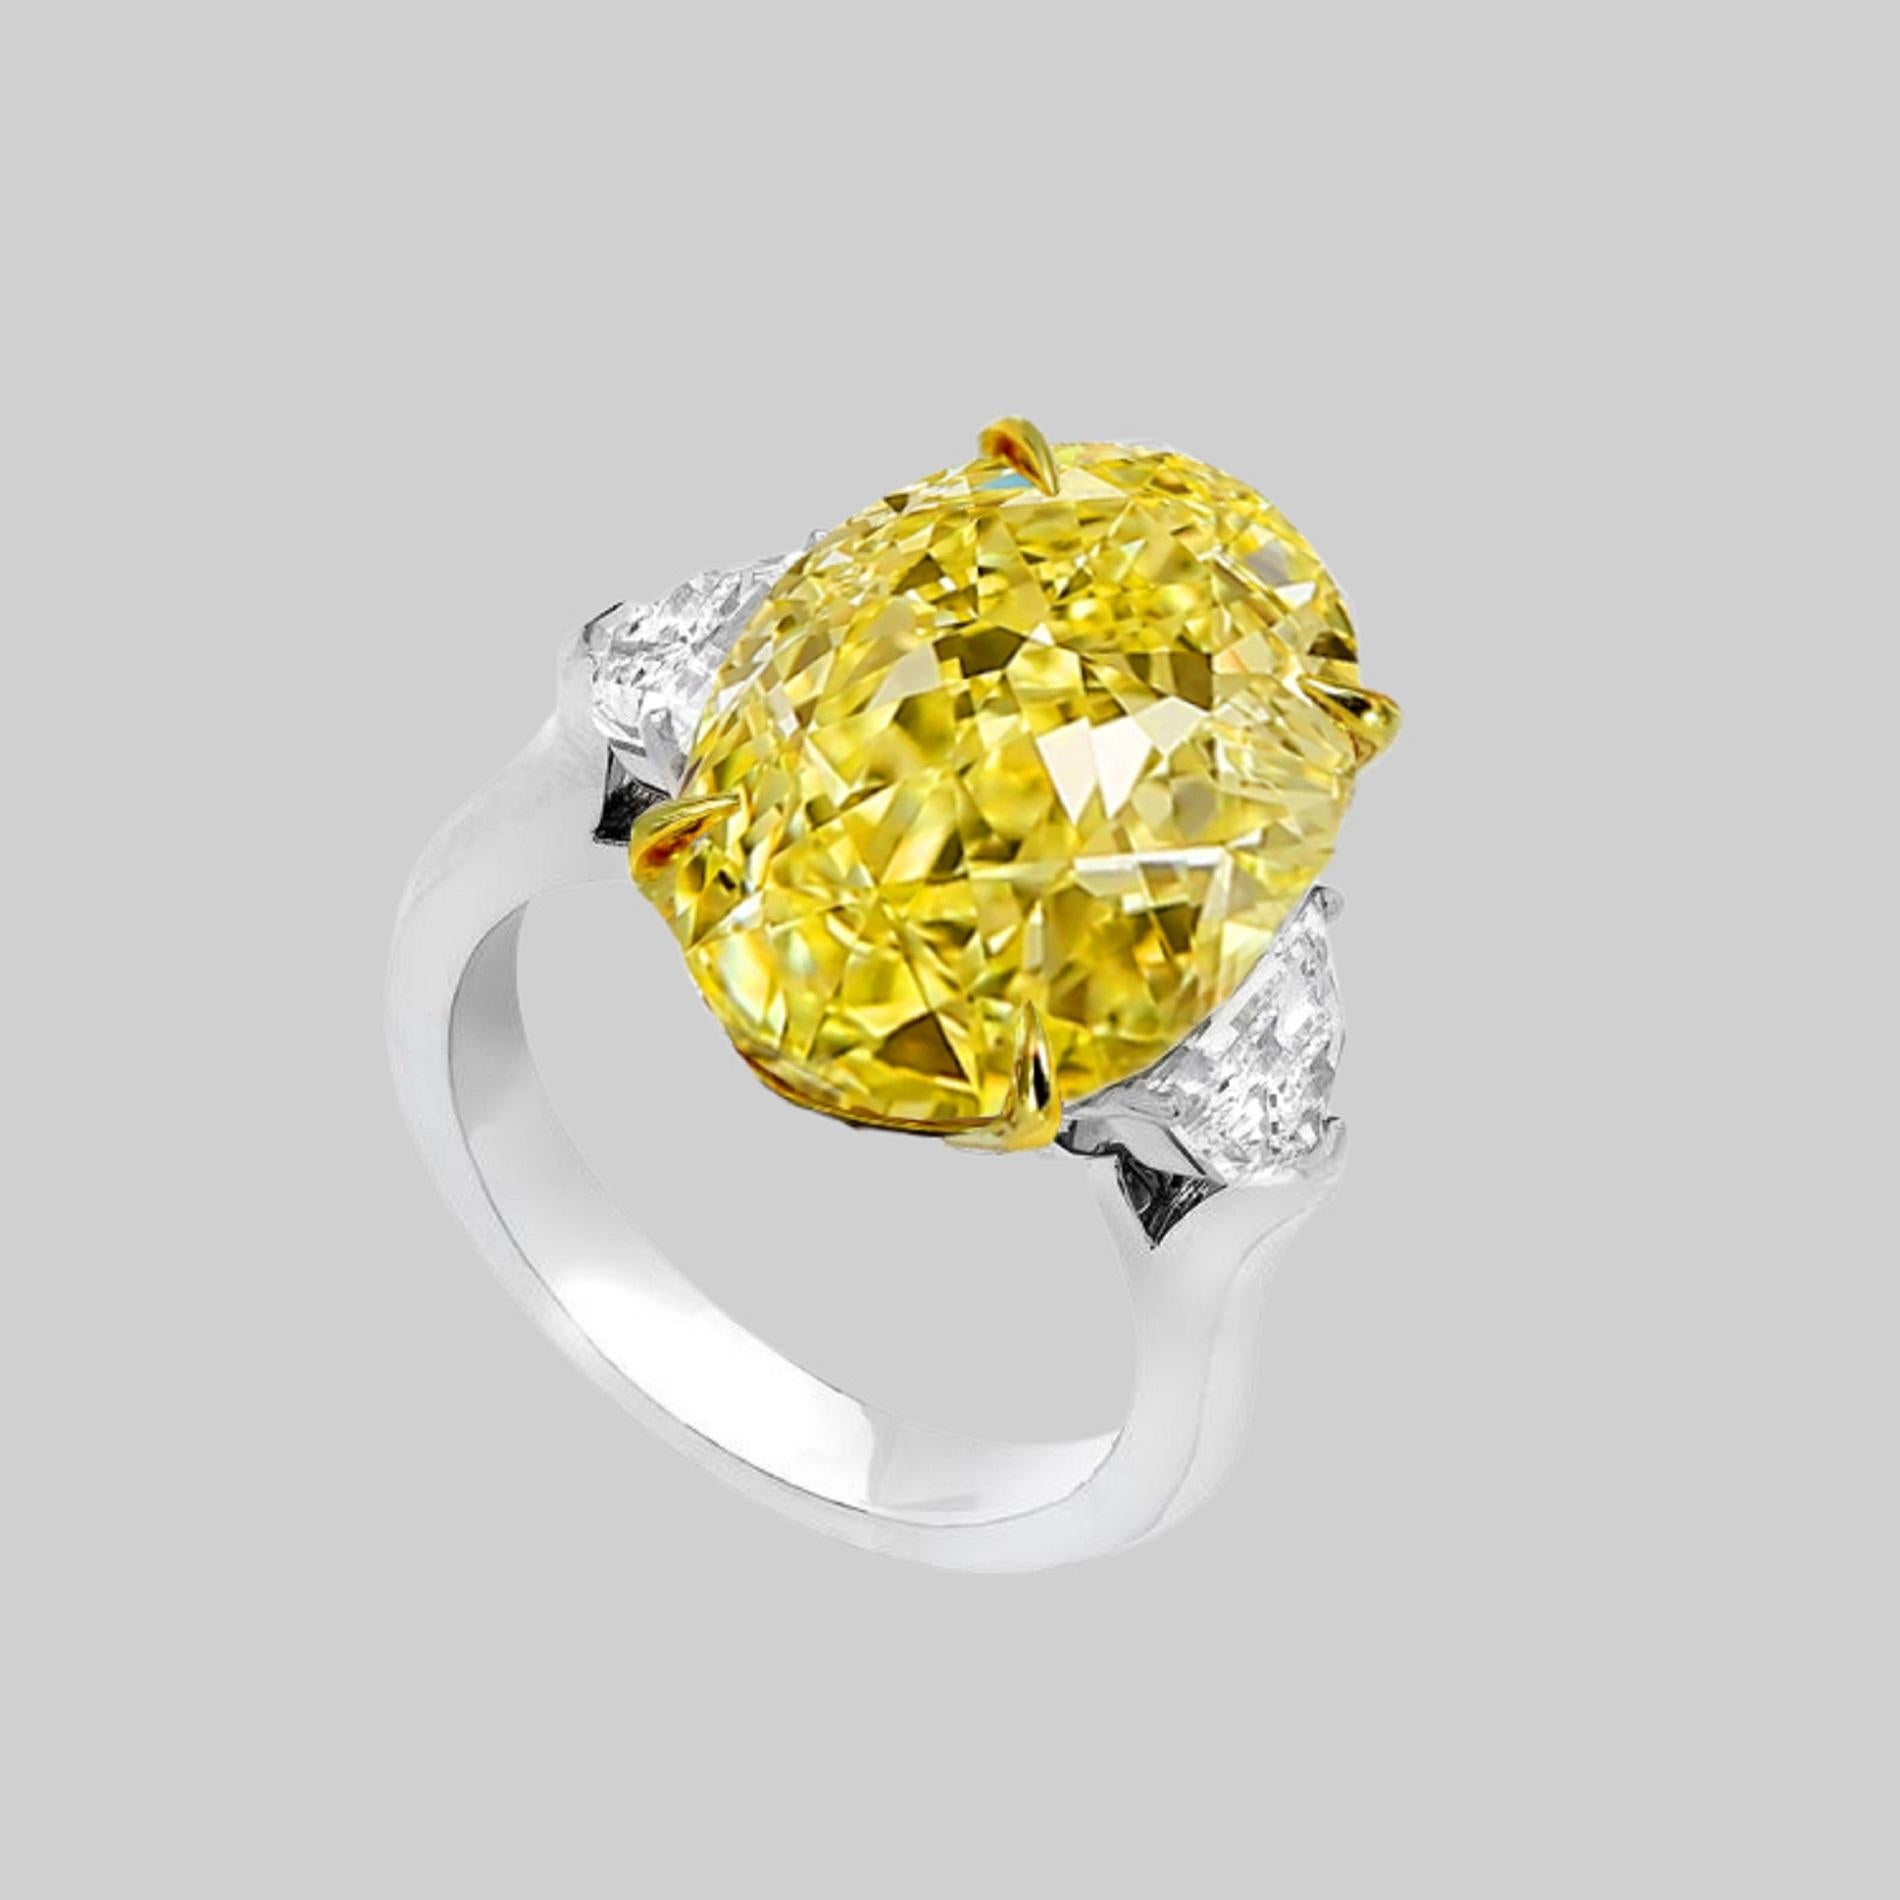 Ein ovaler 8-karätiger natürlicher, intensiv gelber Diamant, flankiert von zwei halbmondförmigen Diamanten von insgesamt 1 Karat, Farbe F, VVS2, an den Seiten  Klarheit. Die drei Steine sind professionell von GIA zertifiziert (siehe Zertifikat